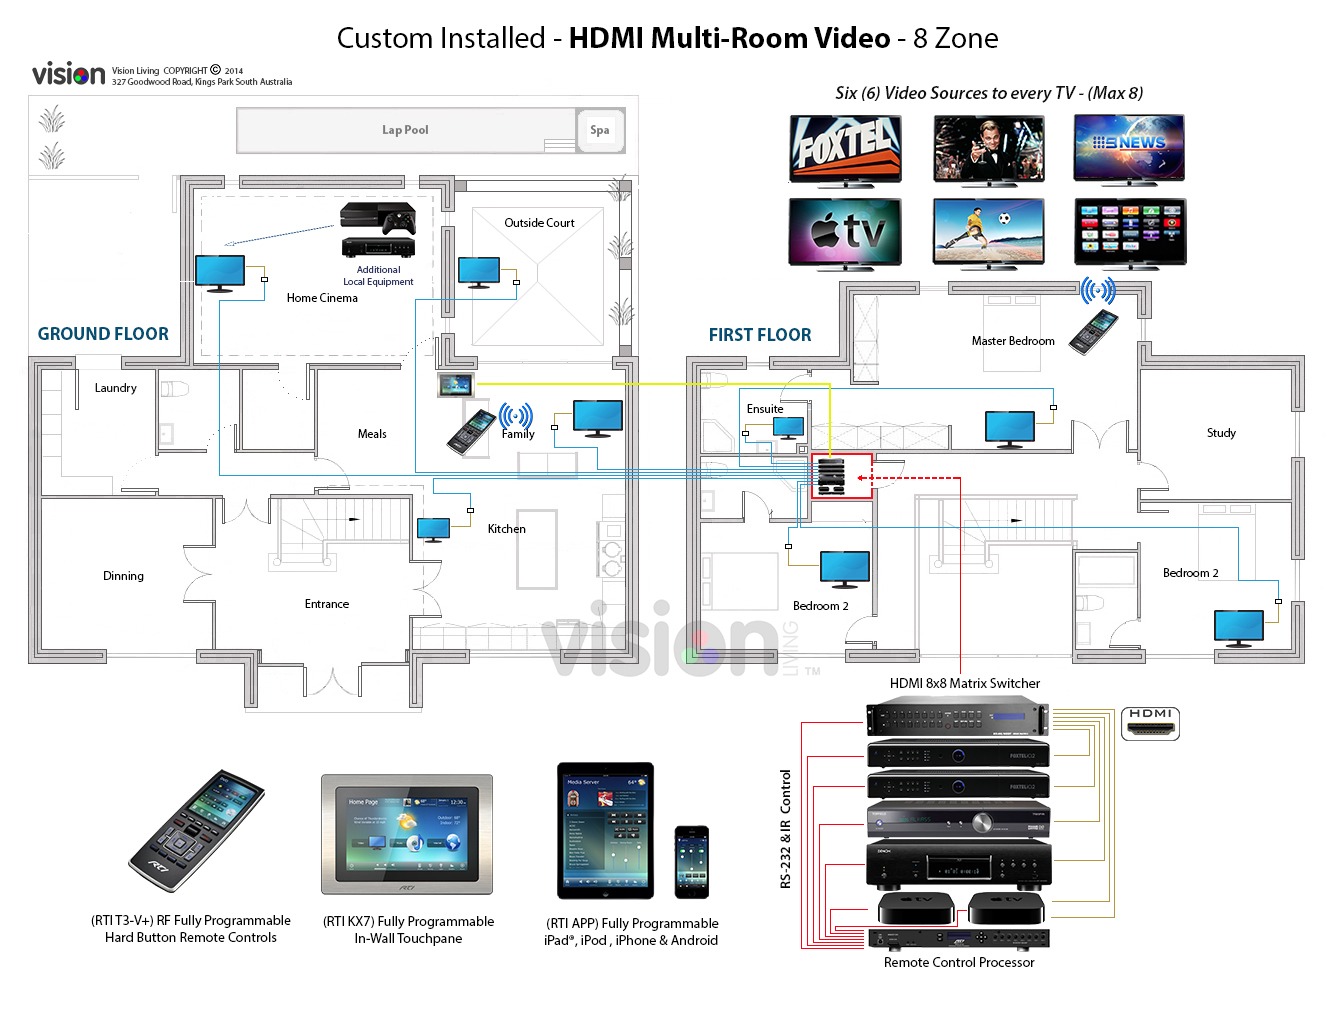 Samsung explica cómo los sistemas multiroom revolucionan el audio en  nuestras casas